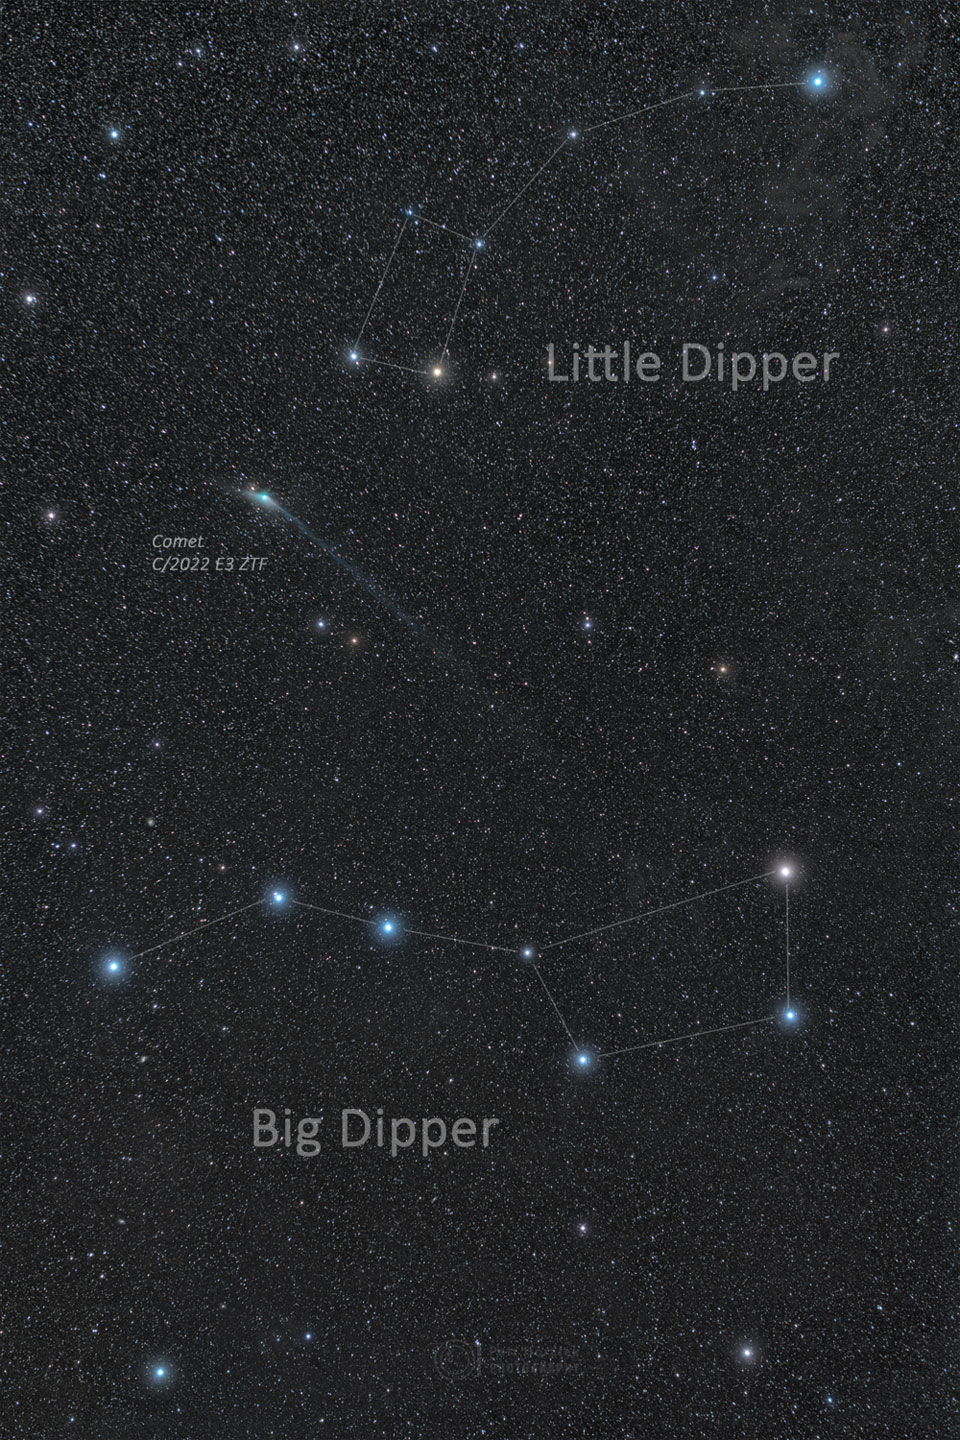 Das Bild zeigt den Kometen ZTF mit einem langen Schweif zwischen zwei berühmten Sterngruppen: dem Großen und dem Kleinen Wagen. Der Kleine Wagen ist oben, der Große Wagen unten.